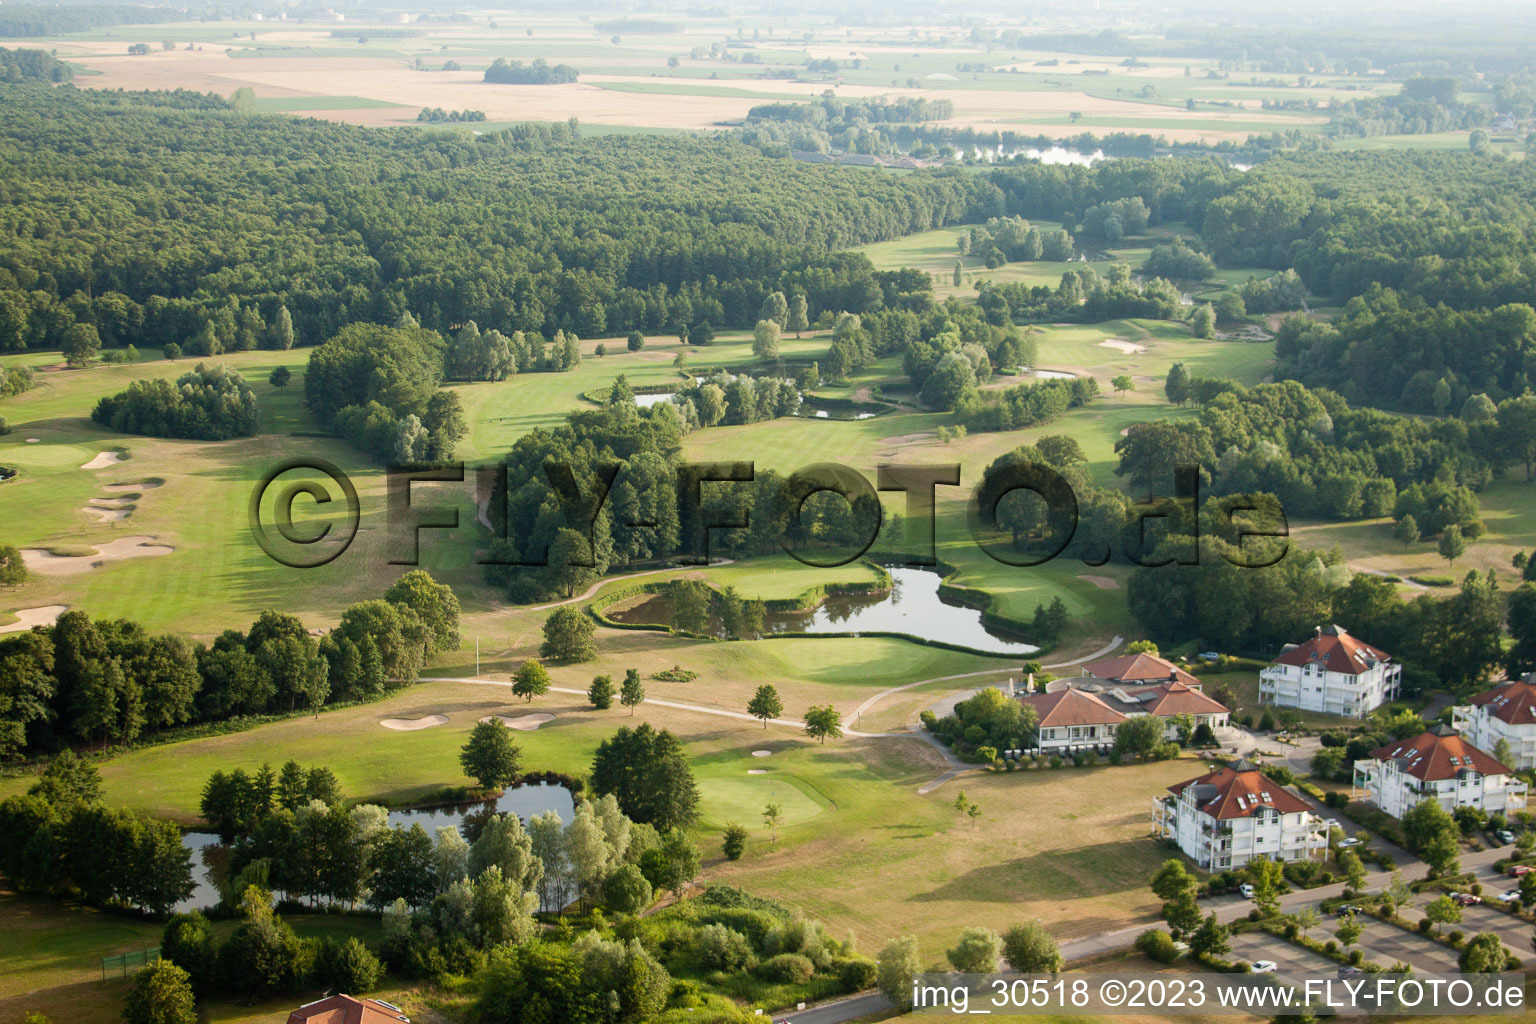 Golf club Soufflenheim Baden-Baden in Soufflenheim in the state Bas-Rhin, France from a drone